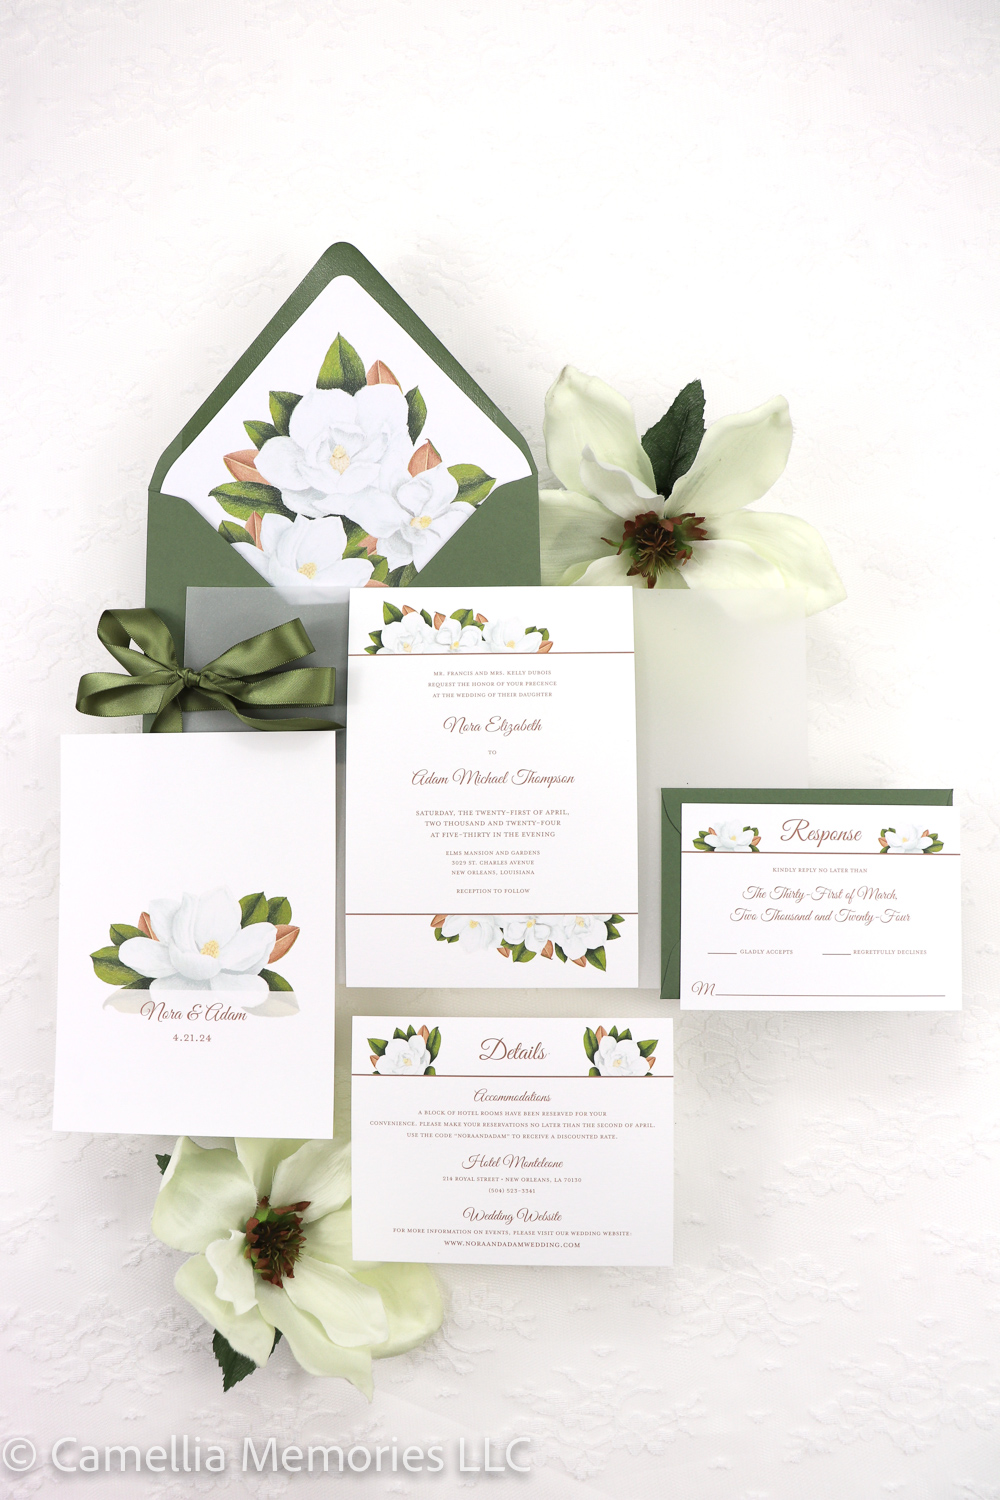 Magnolia Invitation Suite by Camellia Memories